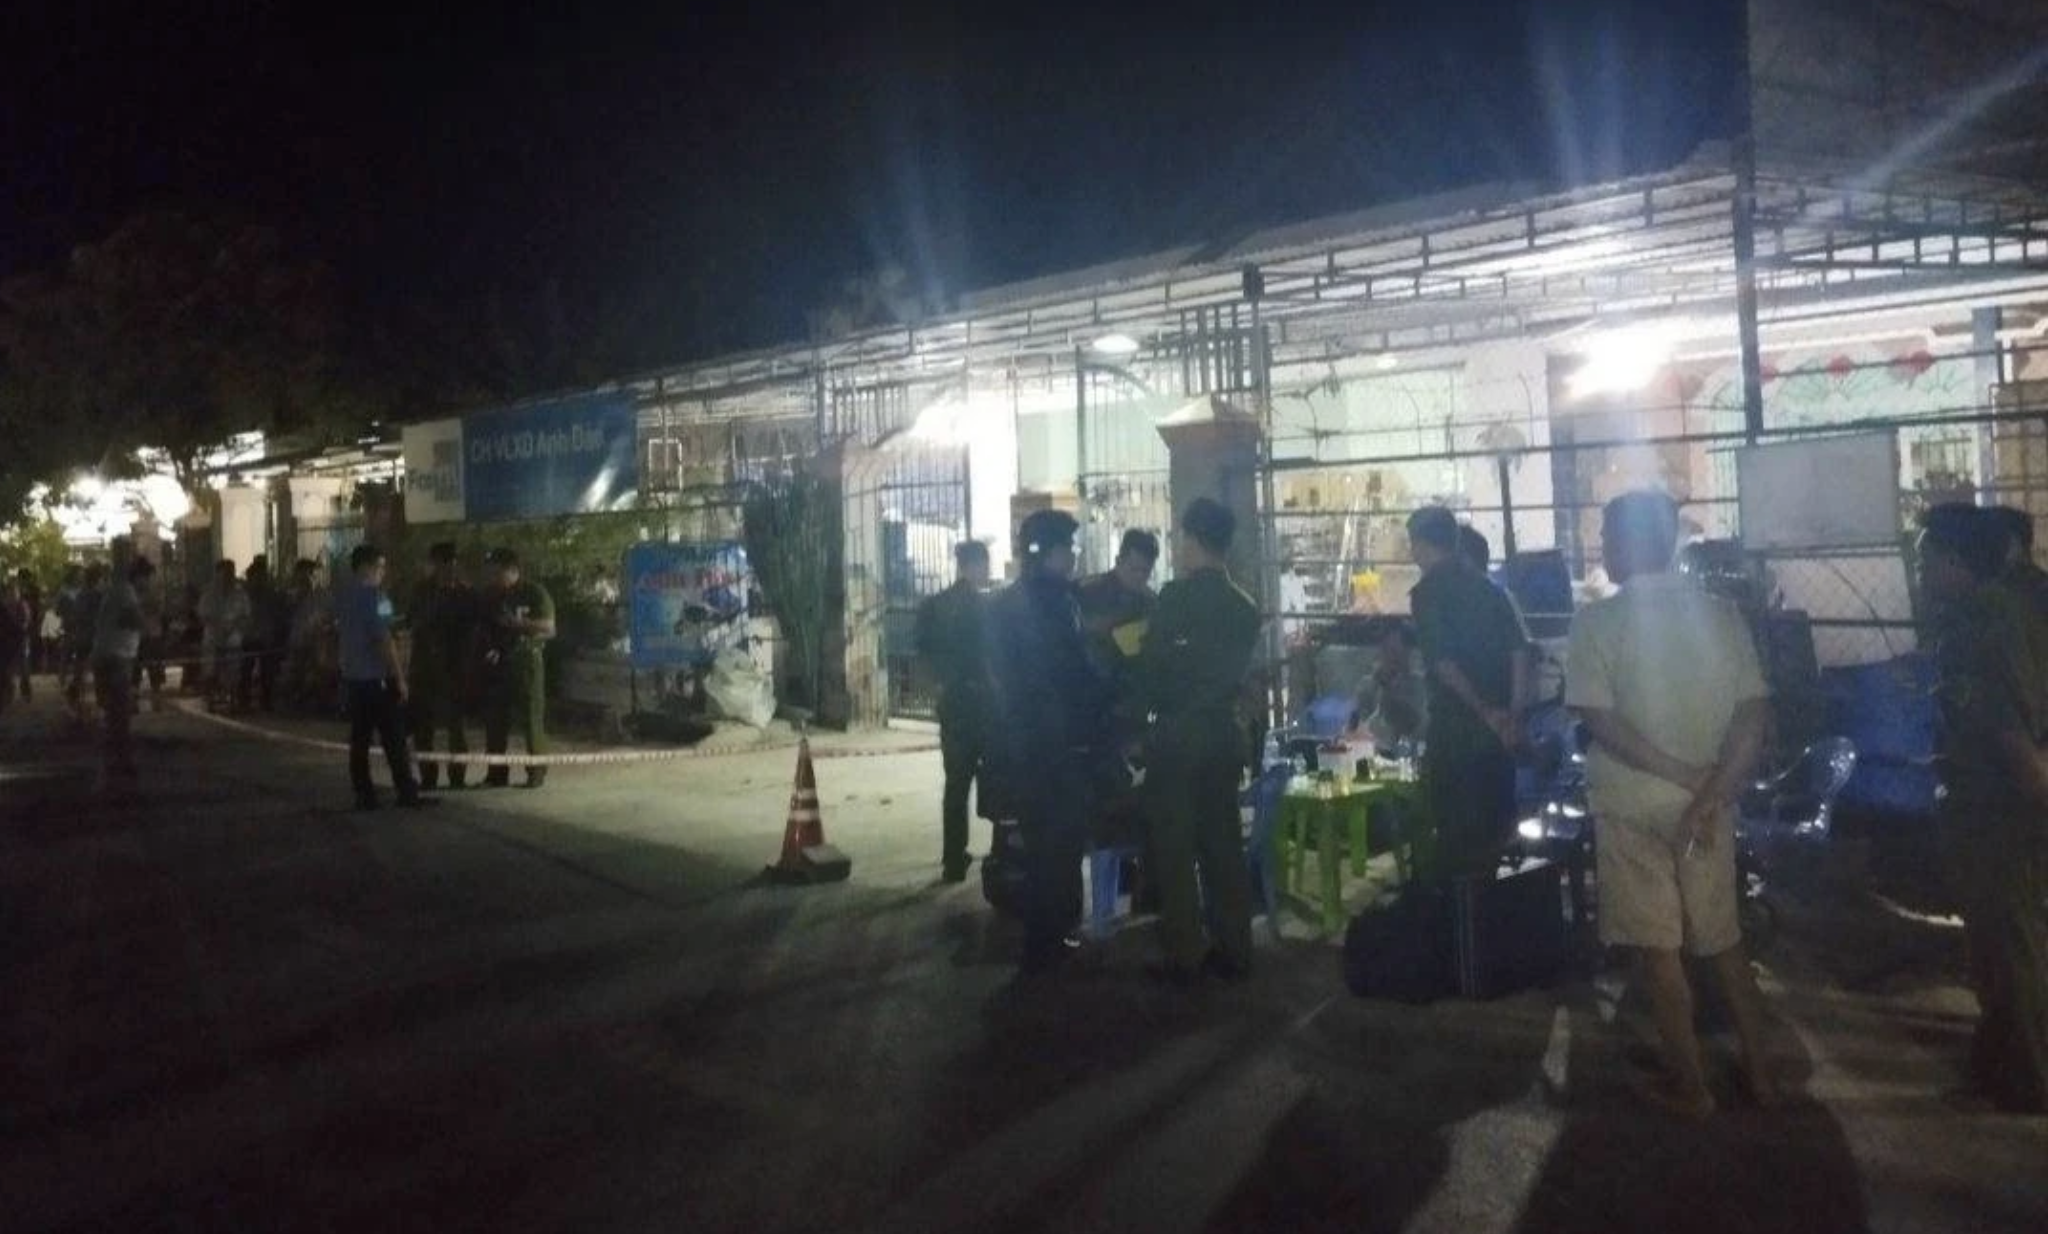 Lực lượng chức năng tiến hành khám nghiệm hiện trường vụ tranh chấp đất đai khiến 1 người tử vong ở huyện Tánh Linh tỉnh Bình Thuận